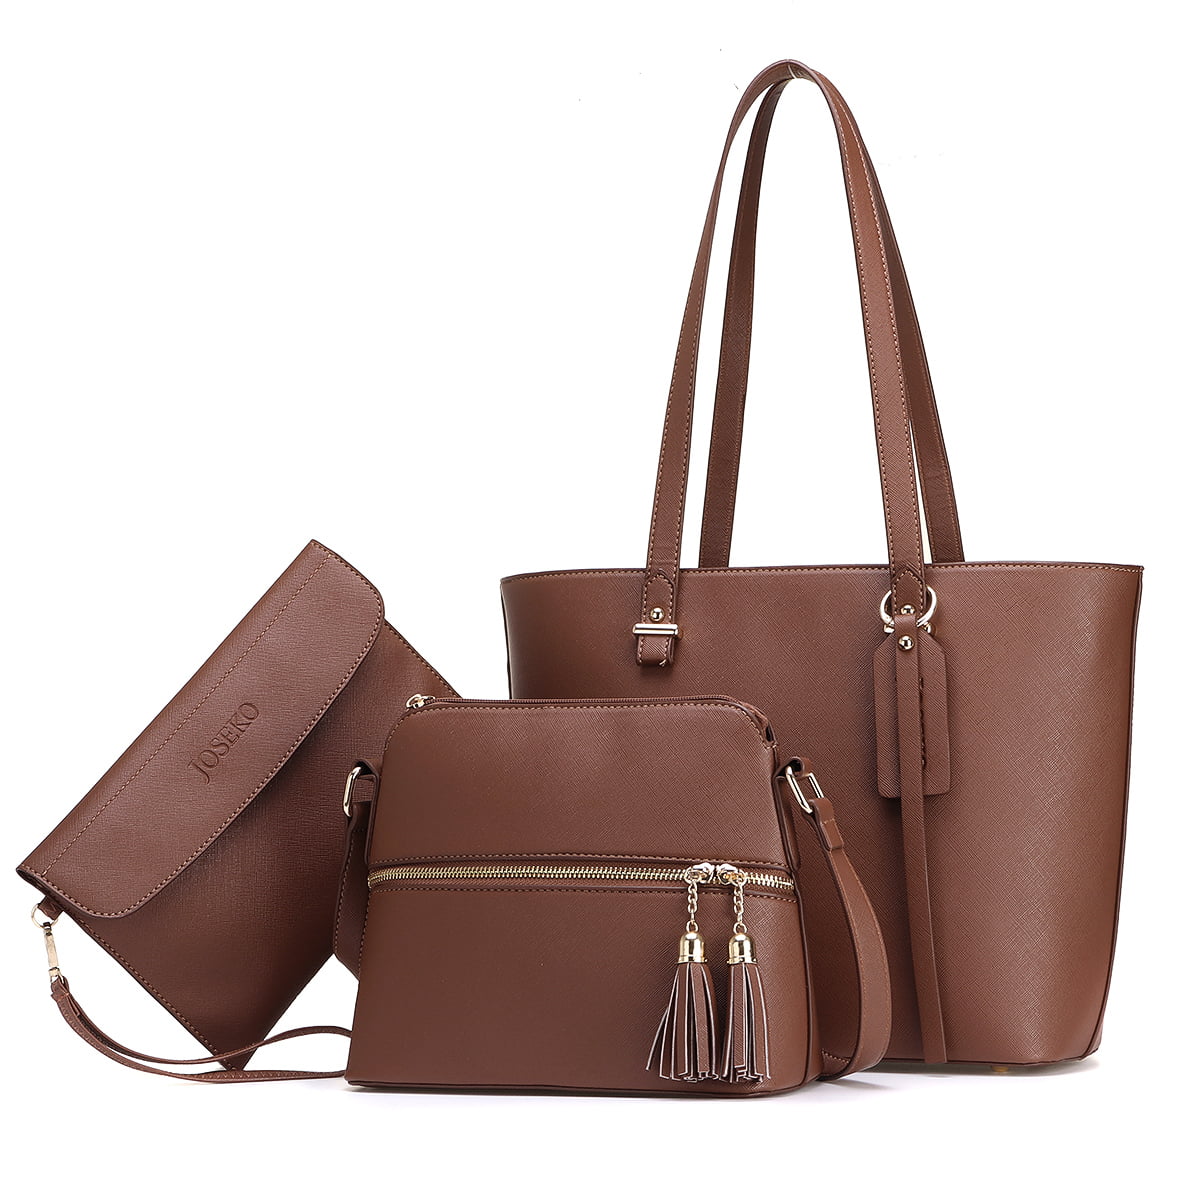 4 In 1 Women Bag Set Soft PU Leather Handbag Tote Shoulder Bags Wallet Purse